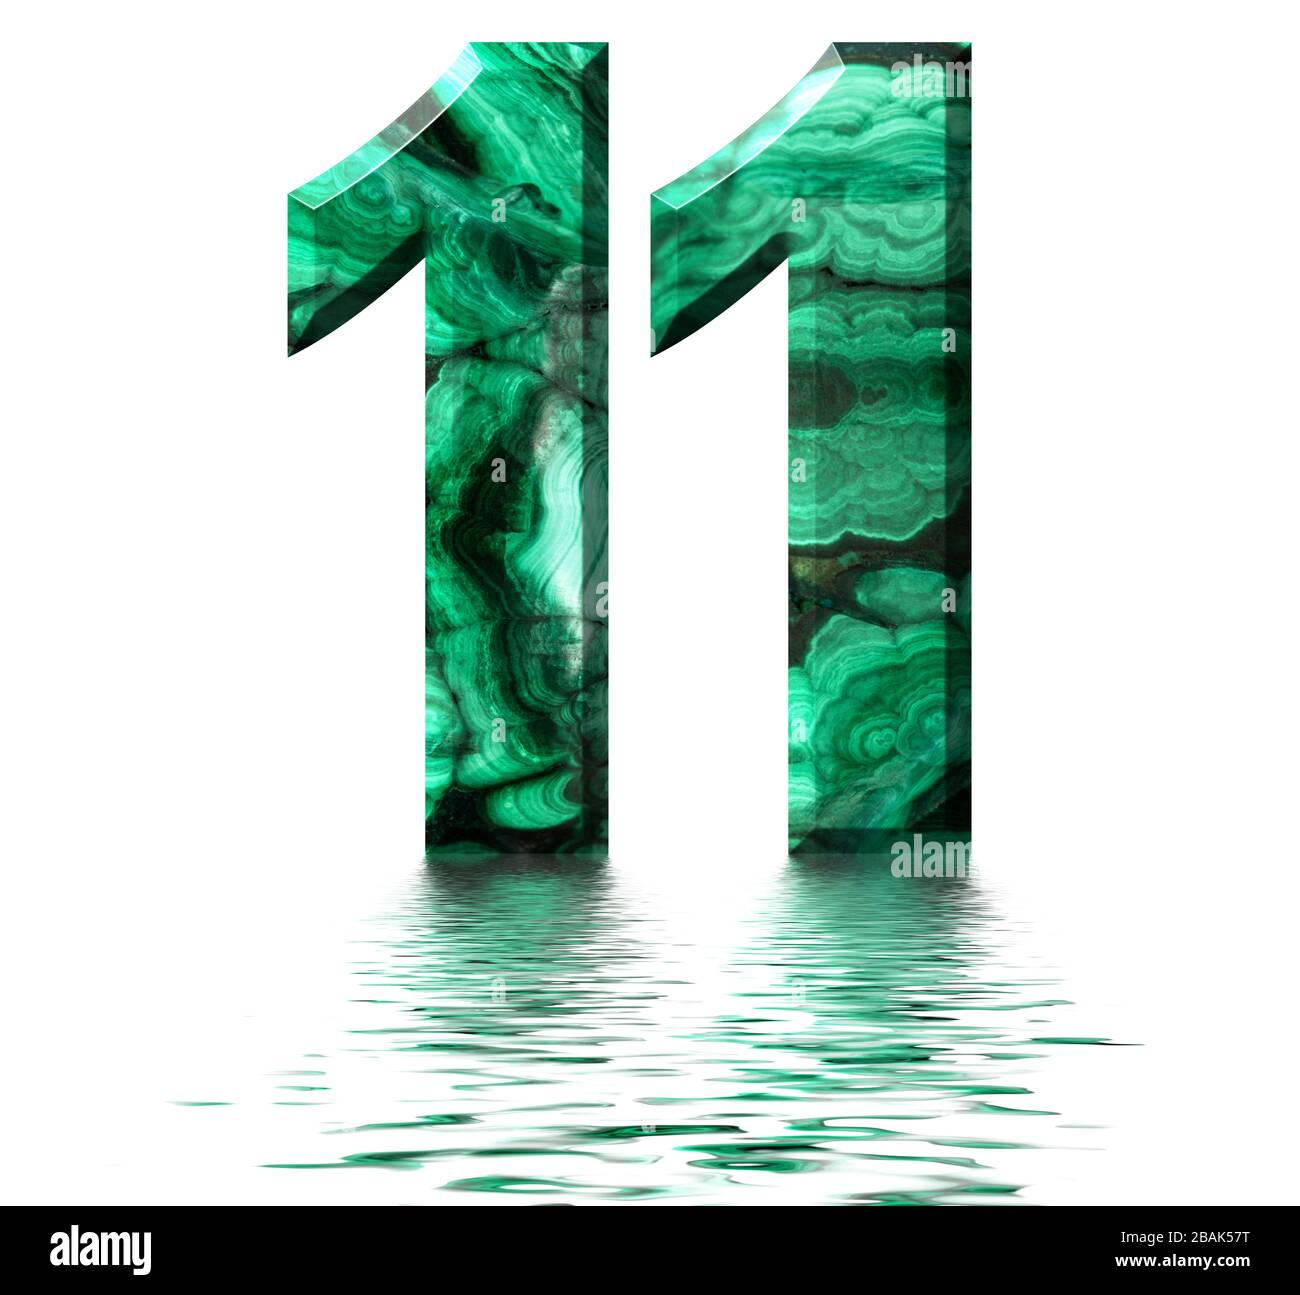 Numero arabo 11, undici, di malachite verde naturale, riflessa sulla superficie dell'acqua, isolata su bianco, resa 3d Foto Stock